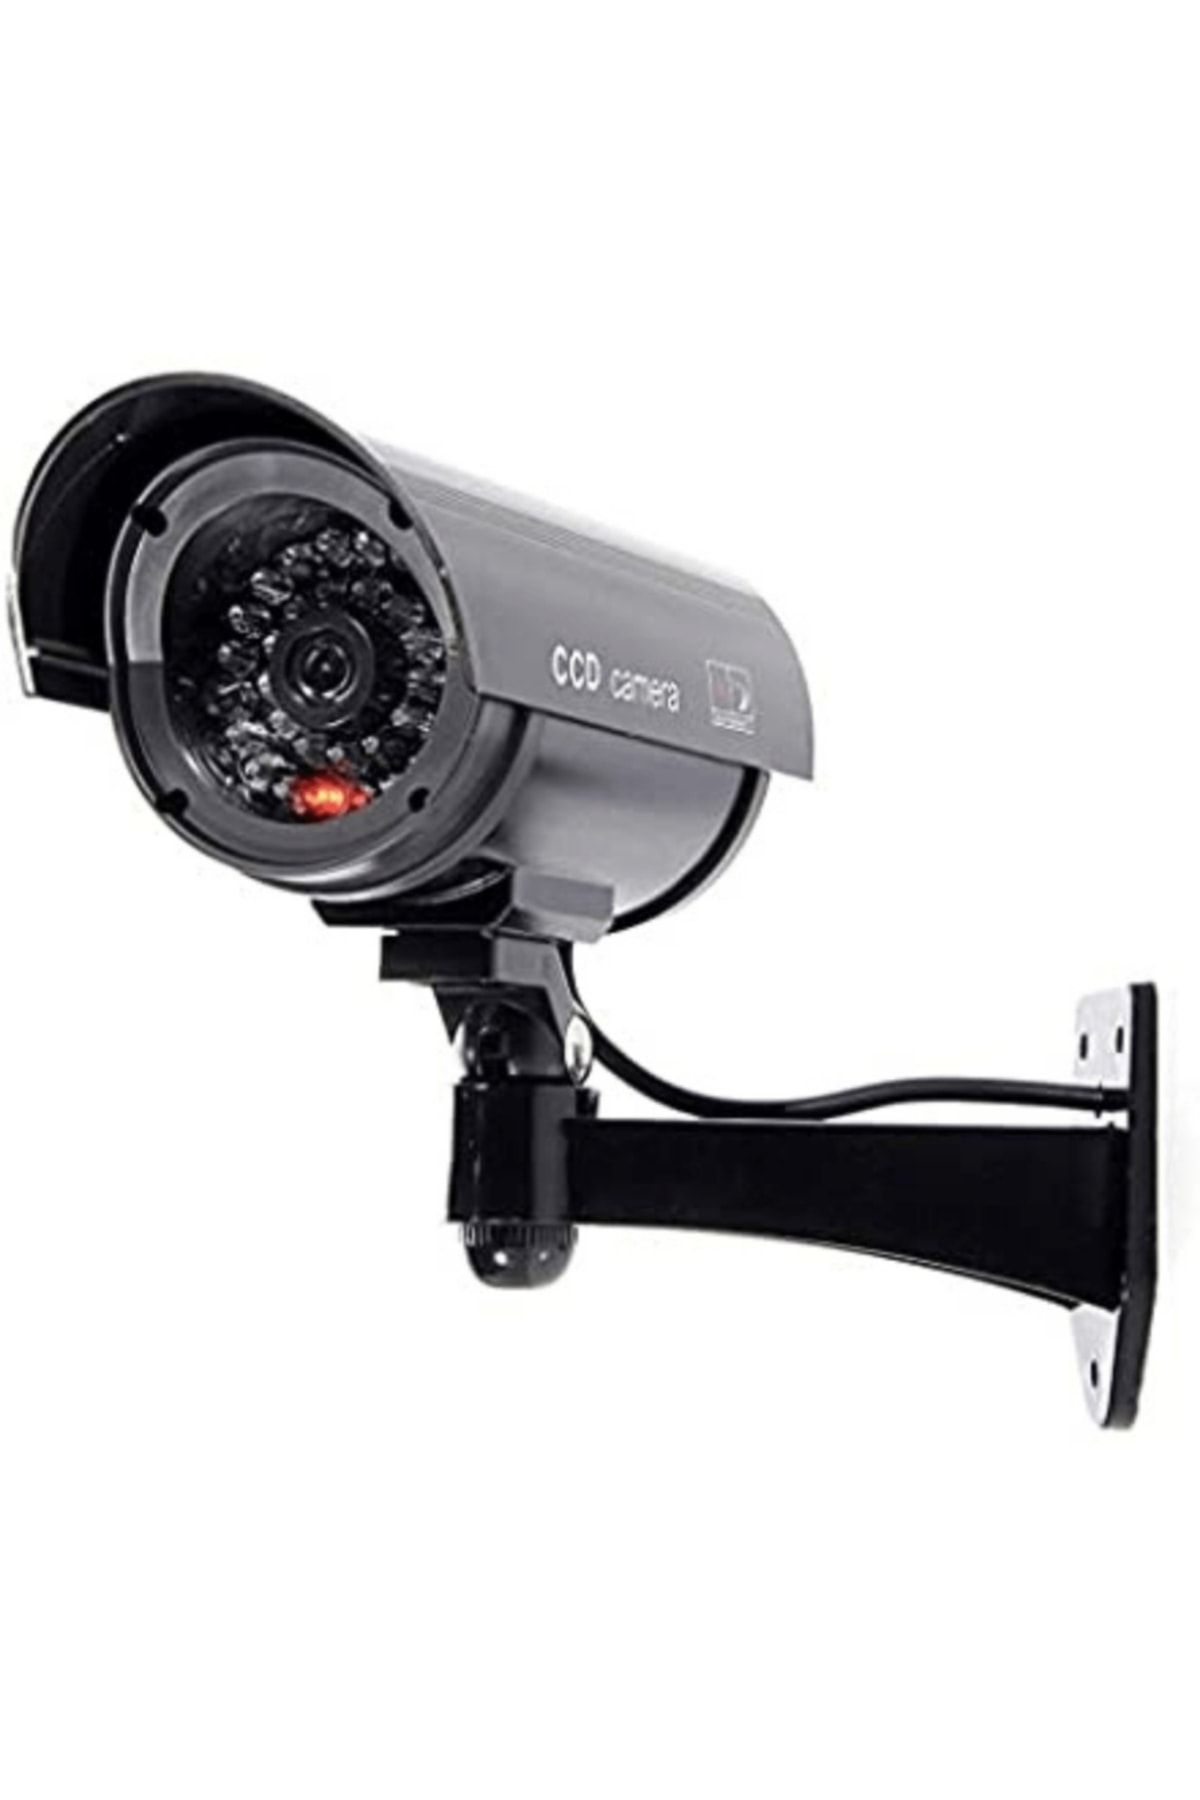 TechnoSmart Gece Görüşlü Pilli ve Ledli Caydırıcı Sahte Güvenlik Kamerası